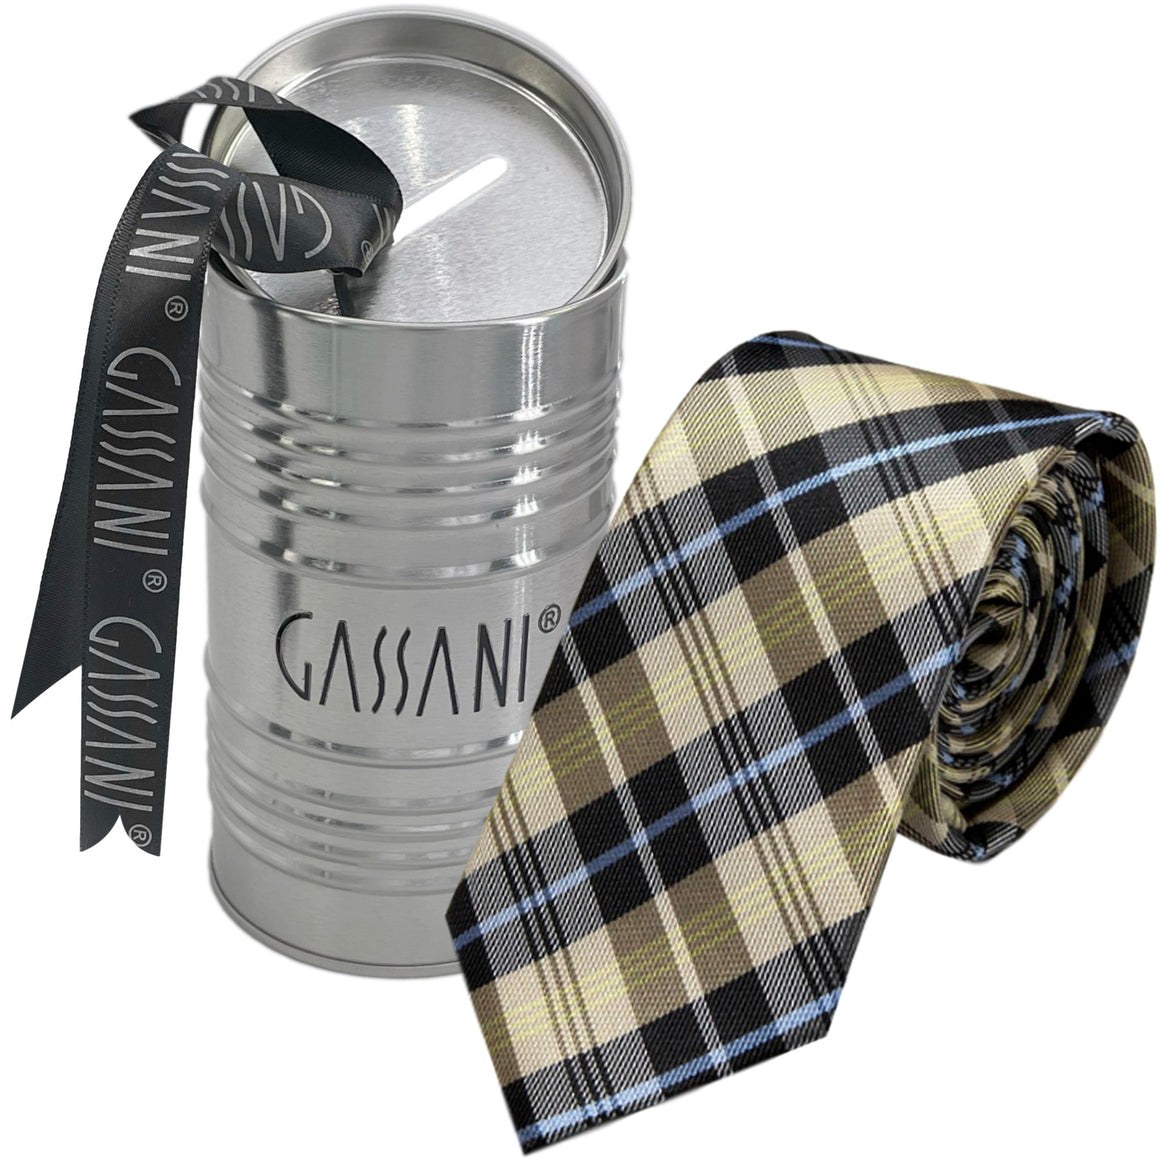 Cravatta da uomo a quadri beige-nera stretta 6 cm, cravatta a quadri scatola regalo salvadanaio in latta